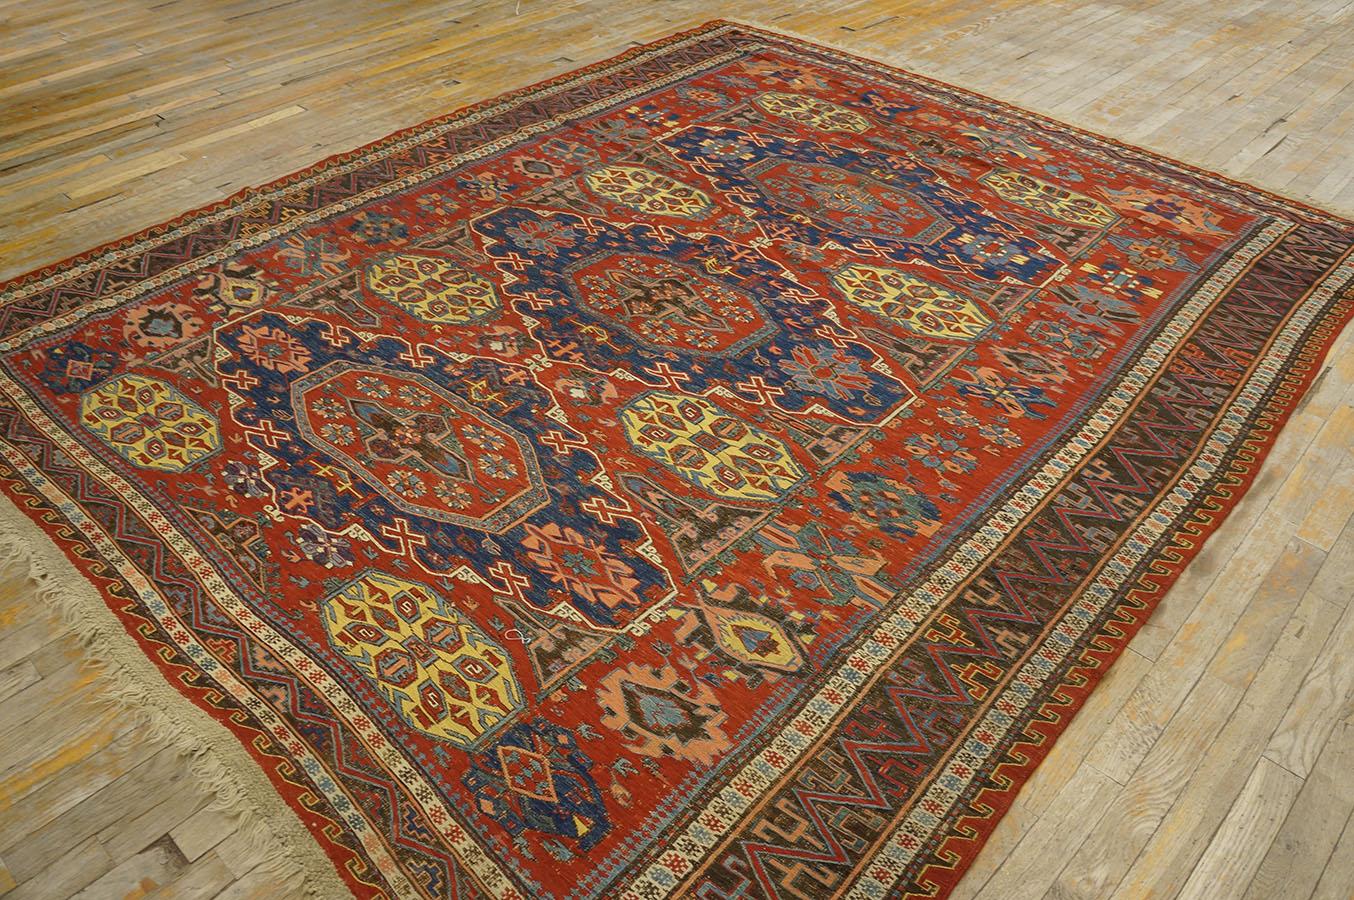 Late 19th Century Caucasian Soumak Flat-weave Carpet (7'6'' x 9 - 228 x 274 cm) For Sale 1